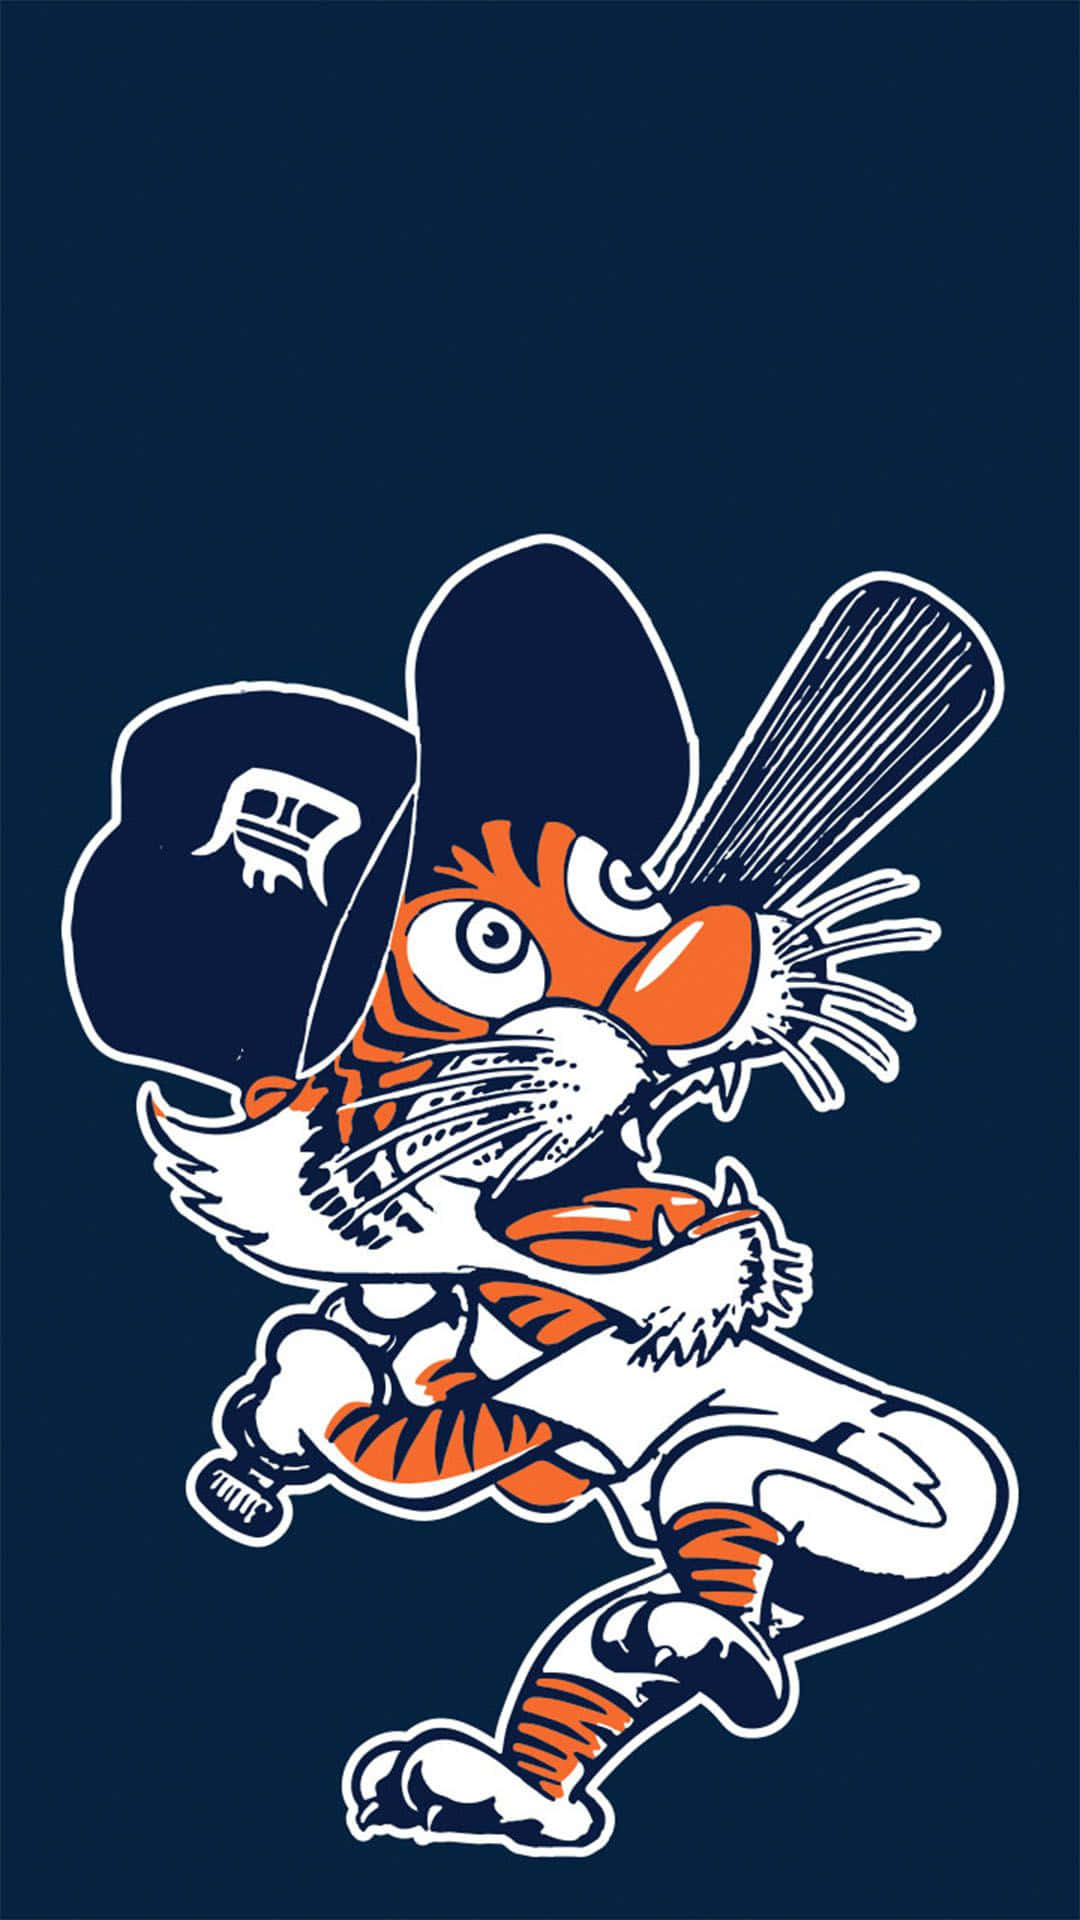 Detroit Tigers Paws 12'' x 12'' Minimalist Mascot Poster Print